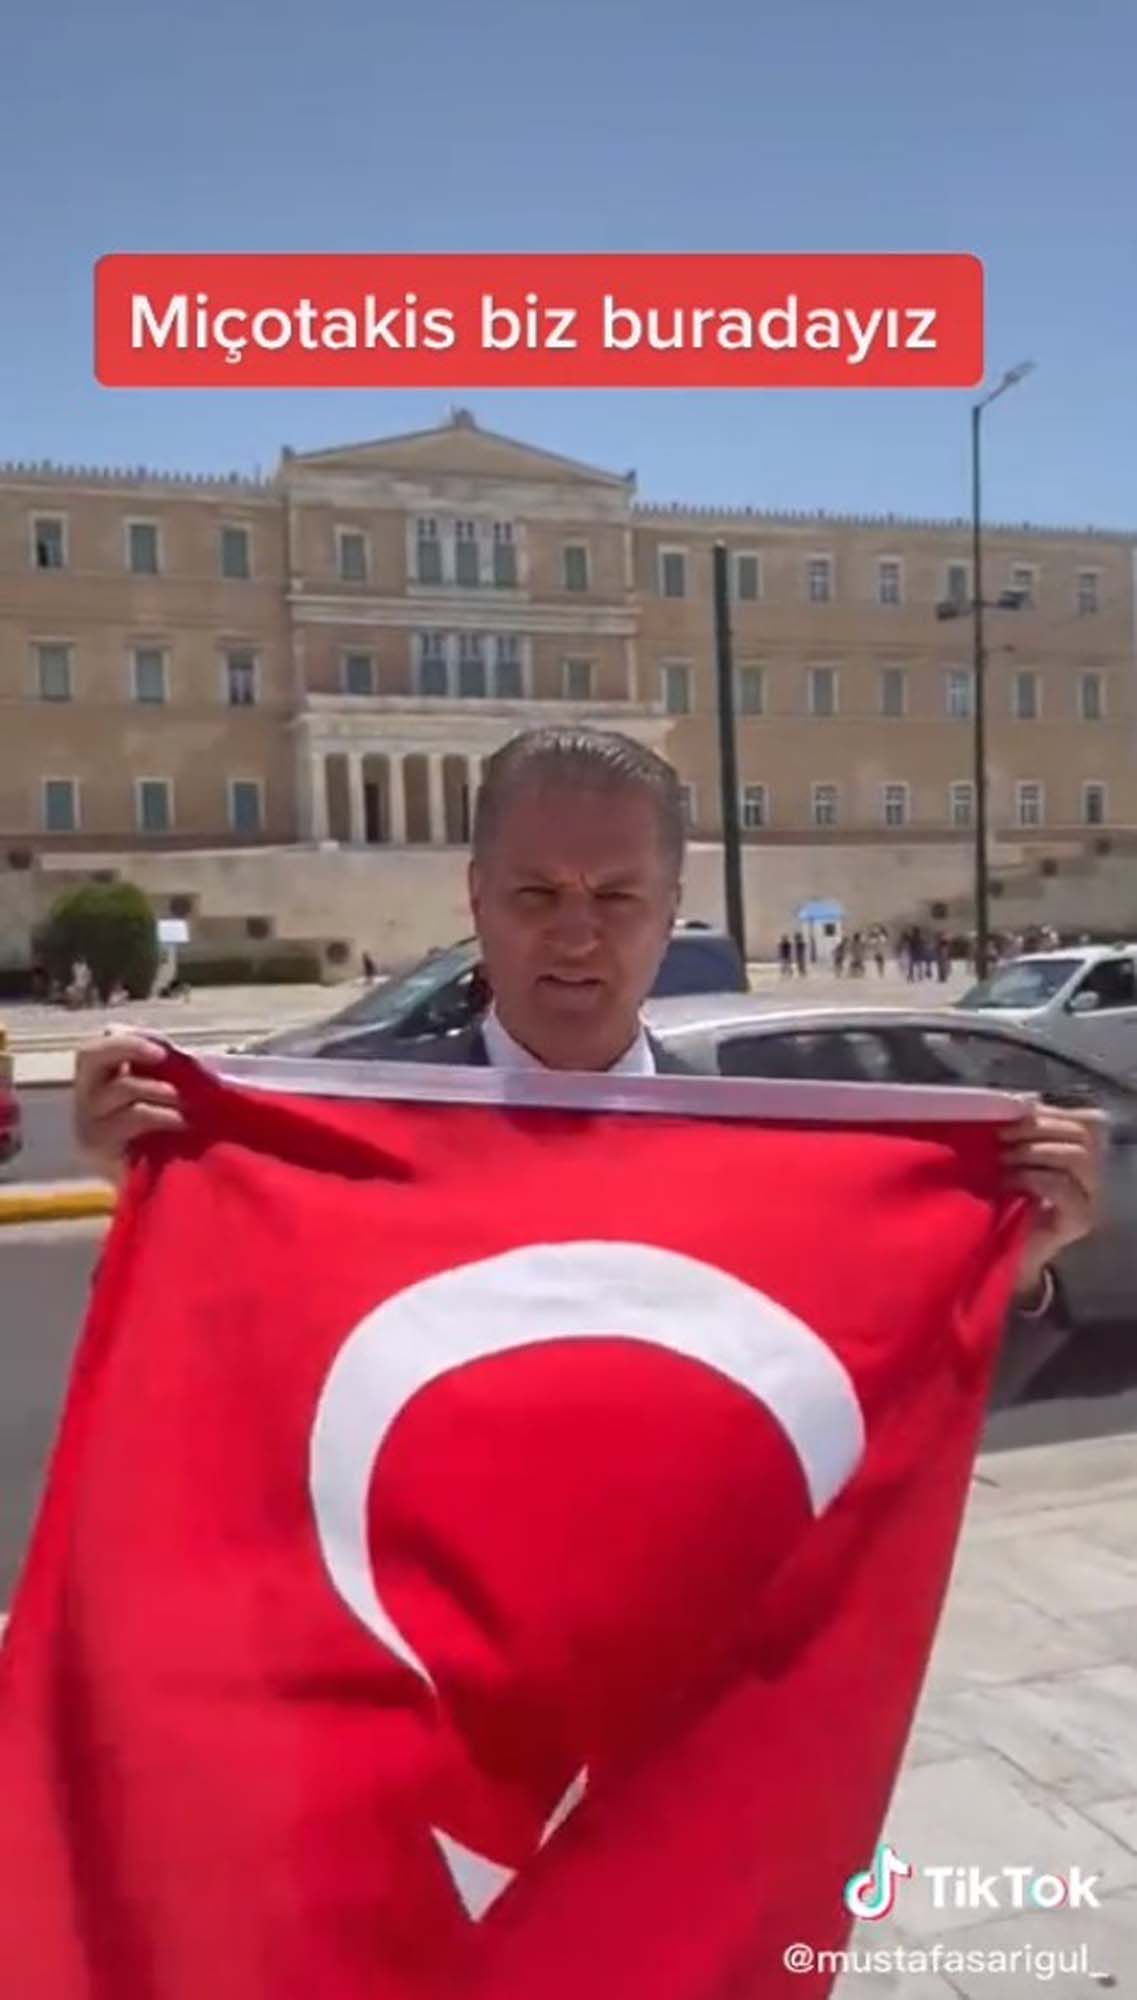 Mustafa Sarıgül, Yunanistan Parlamentosu önünde Türk bayrağı açıp, Miçotakis'e göz dağı verdi!